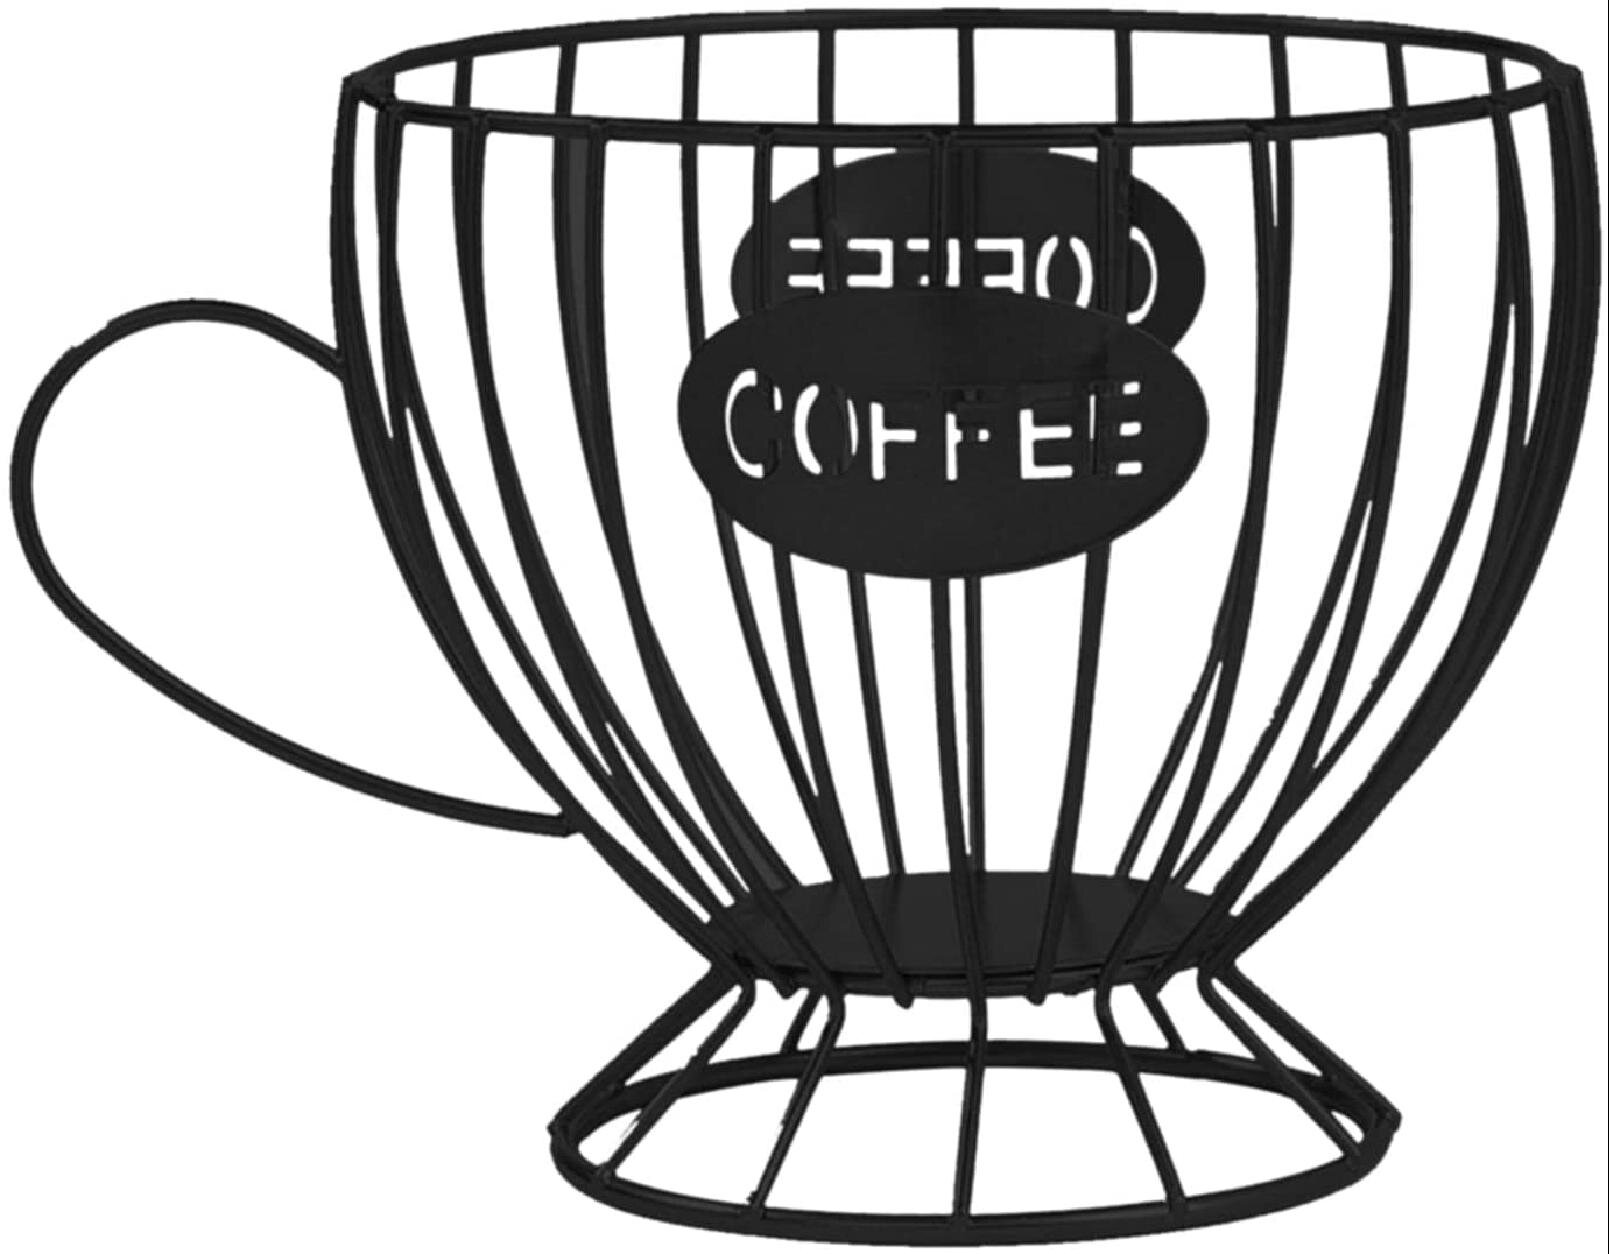 Coffee Pod Holder Mug Organizer Fruit Metal Storage Basket Large Capacity 